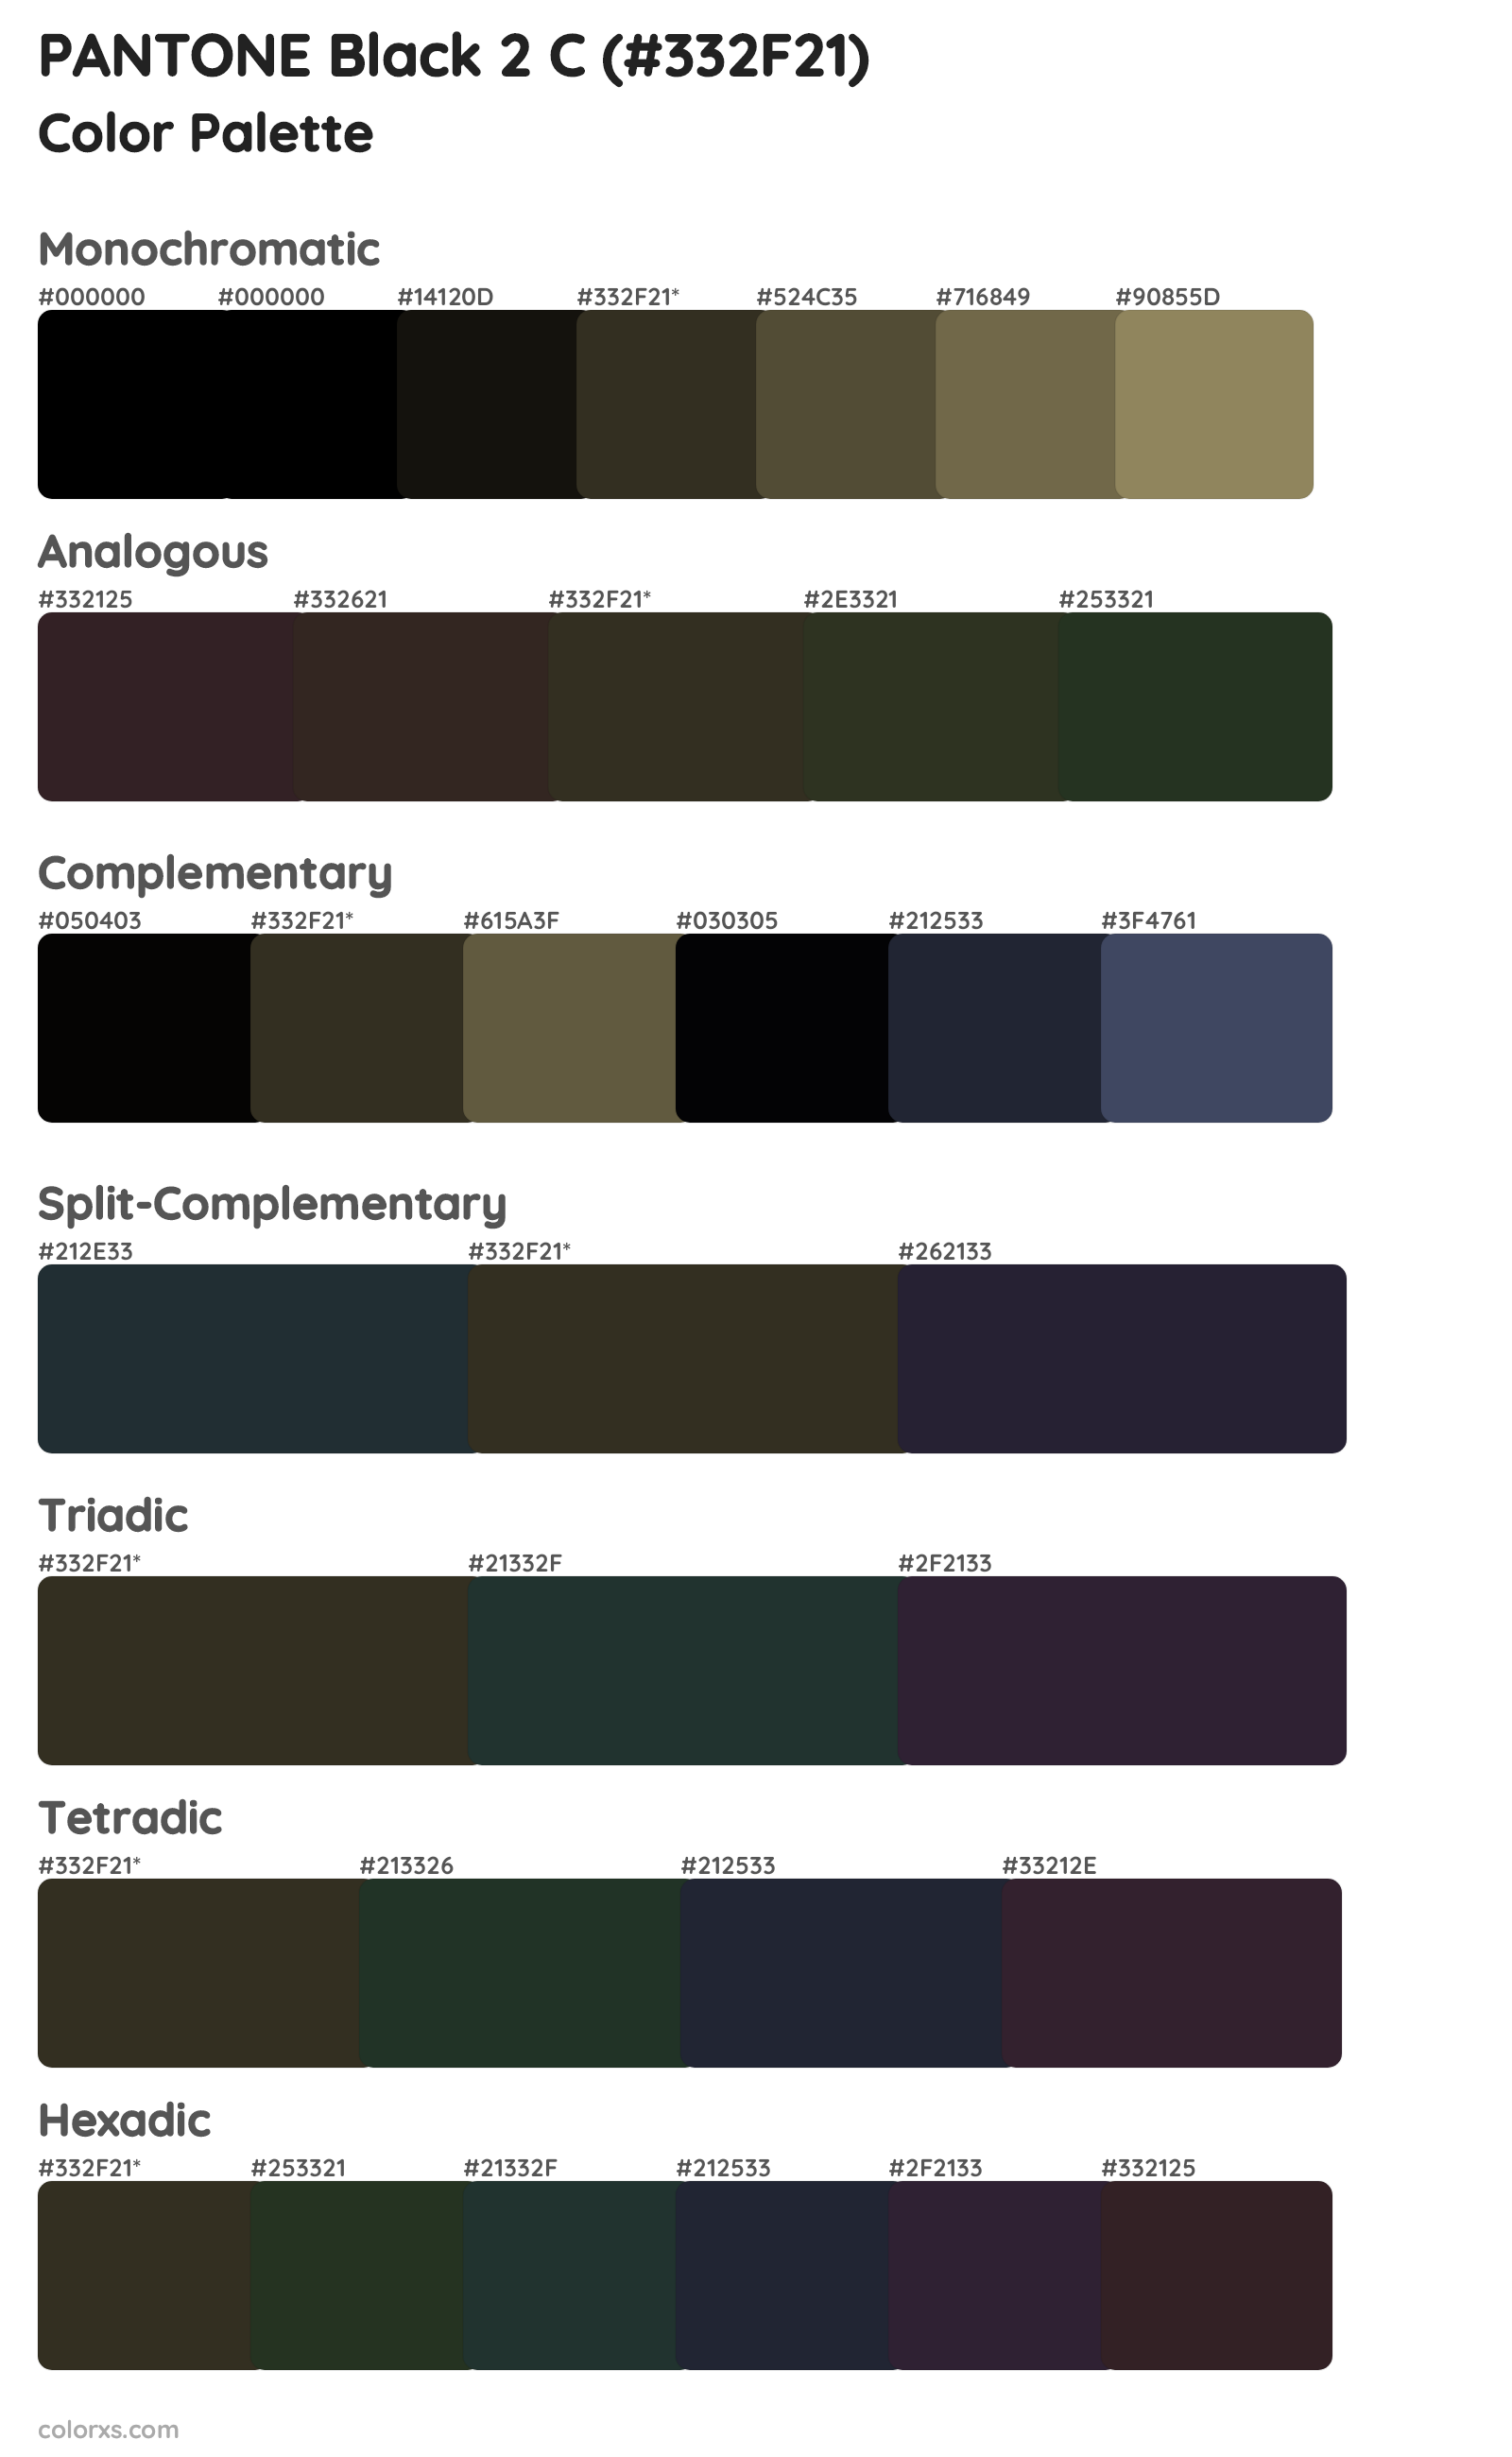 PANTONE Black 2 C Color Scheme Palettes